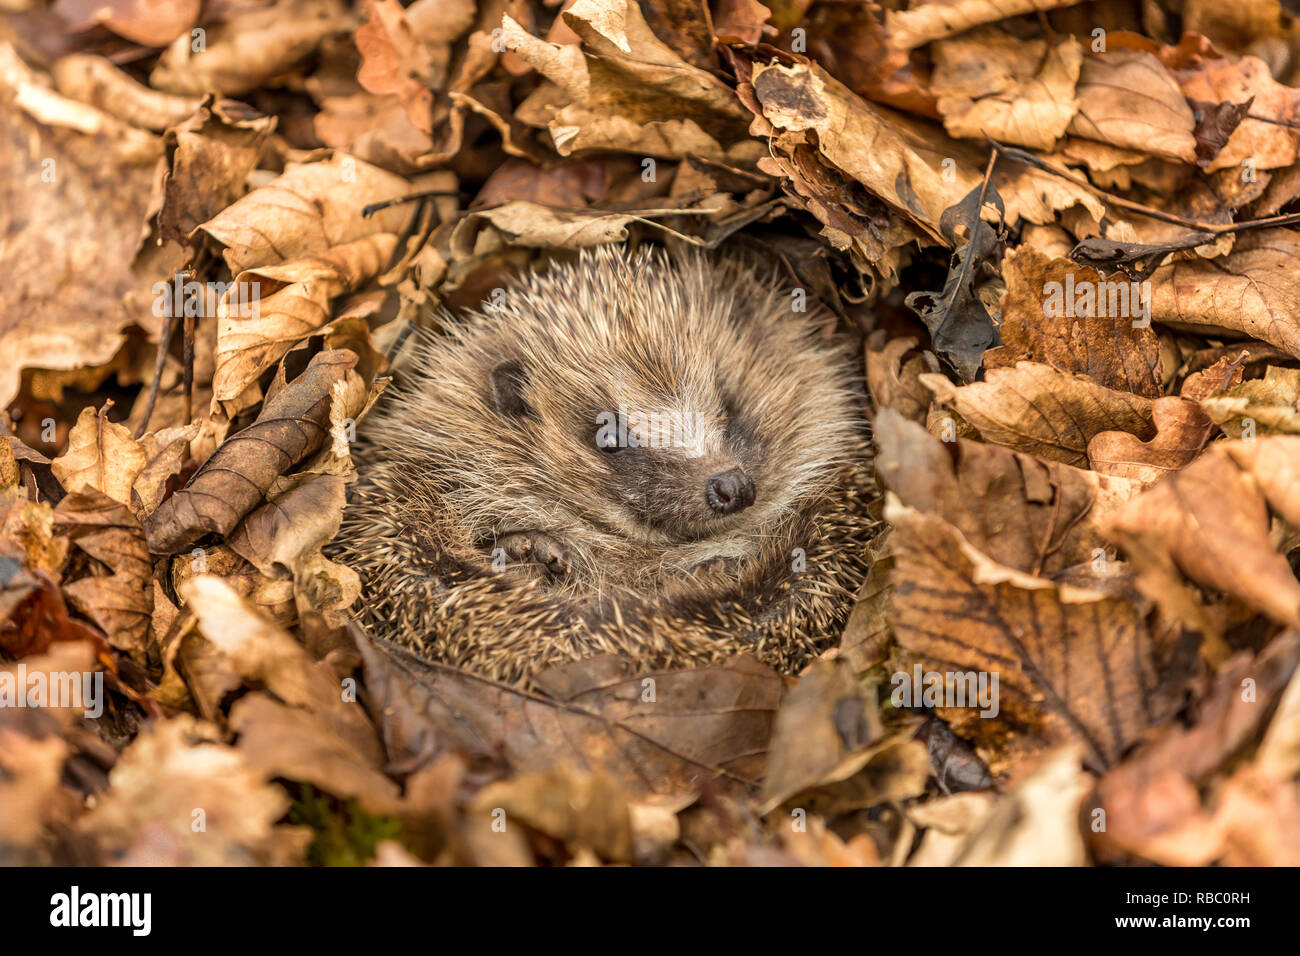 Hérisson en hibernation (nom scientifique : Erinaceus europaeus).  Indigènes, sauvages, hérisson, enroulé en boule et hibernant dans les  feuilles d'automne Photo Stock - Alamy